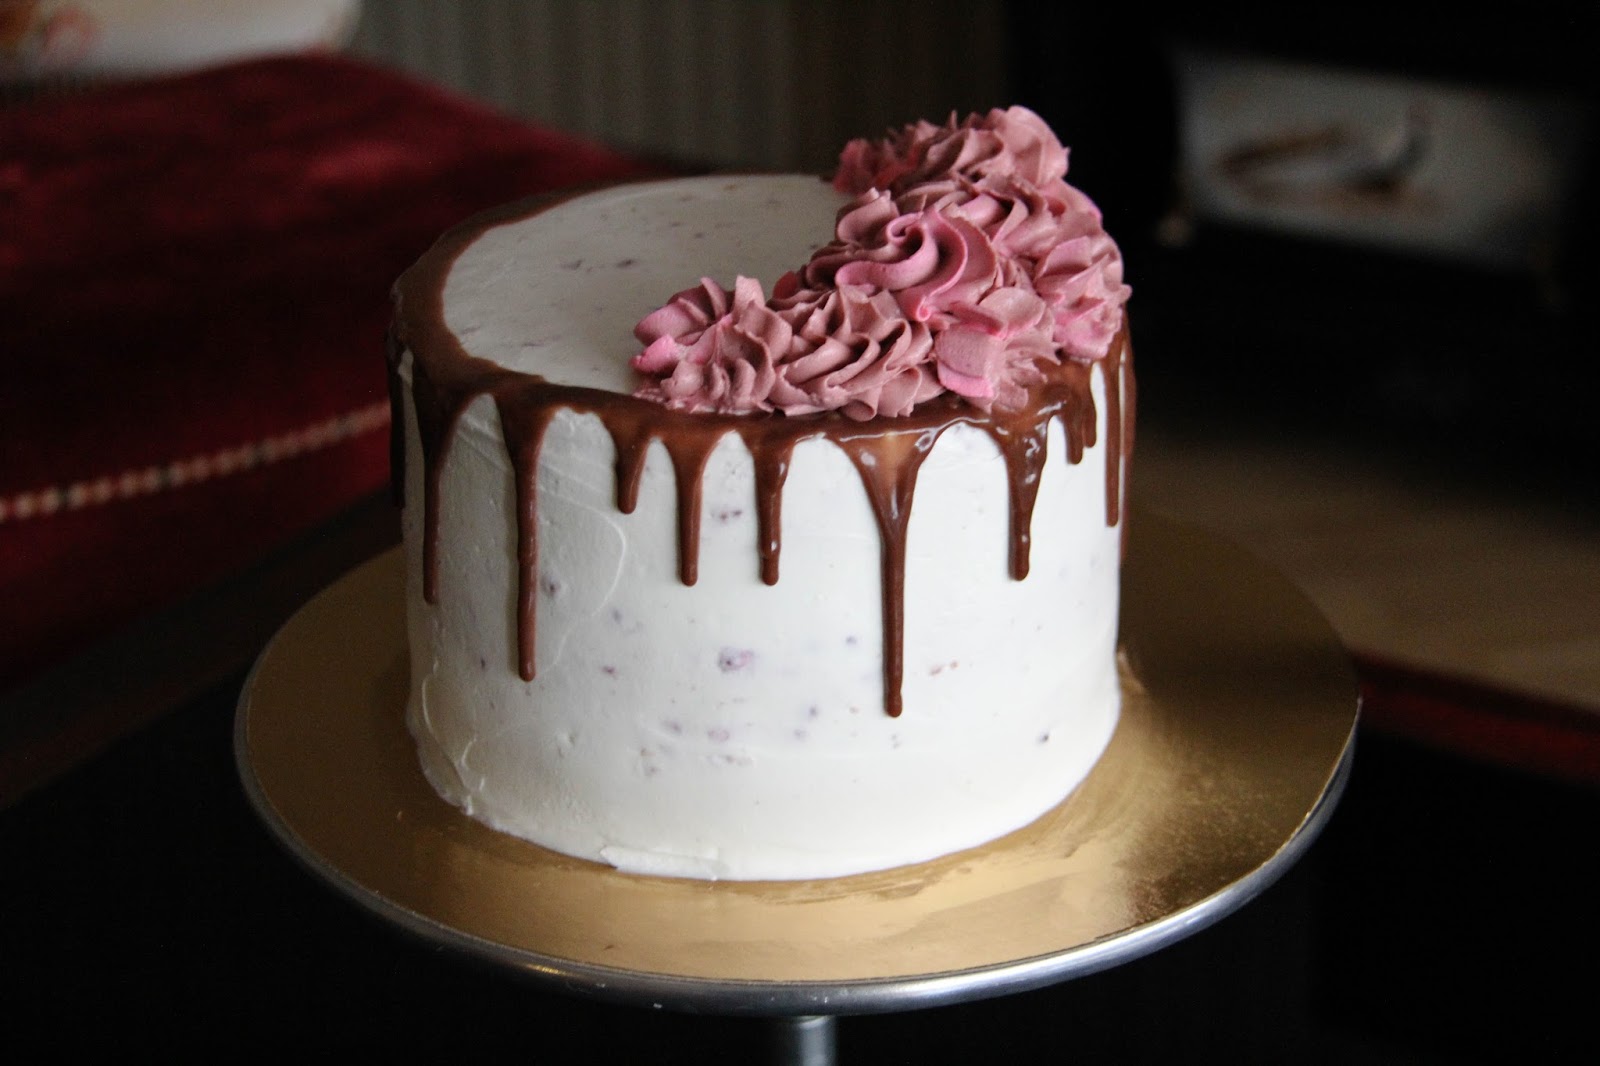 Выравнивание и украшение торта кремом чиз. Крем-чиз для торта торта. Шоколадный торт с кремом чиз. Украшение торта кремом чиз. Торт крем чиз с шоколадными подтеками.